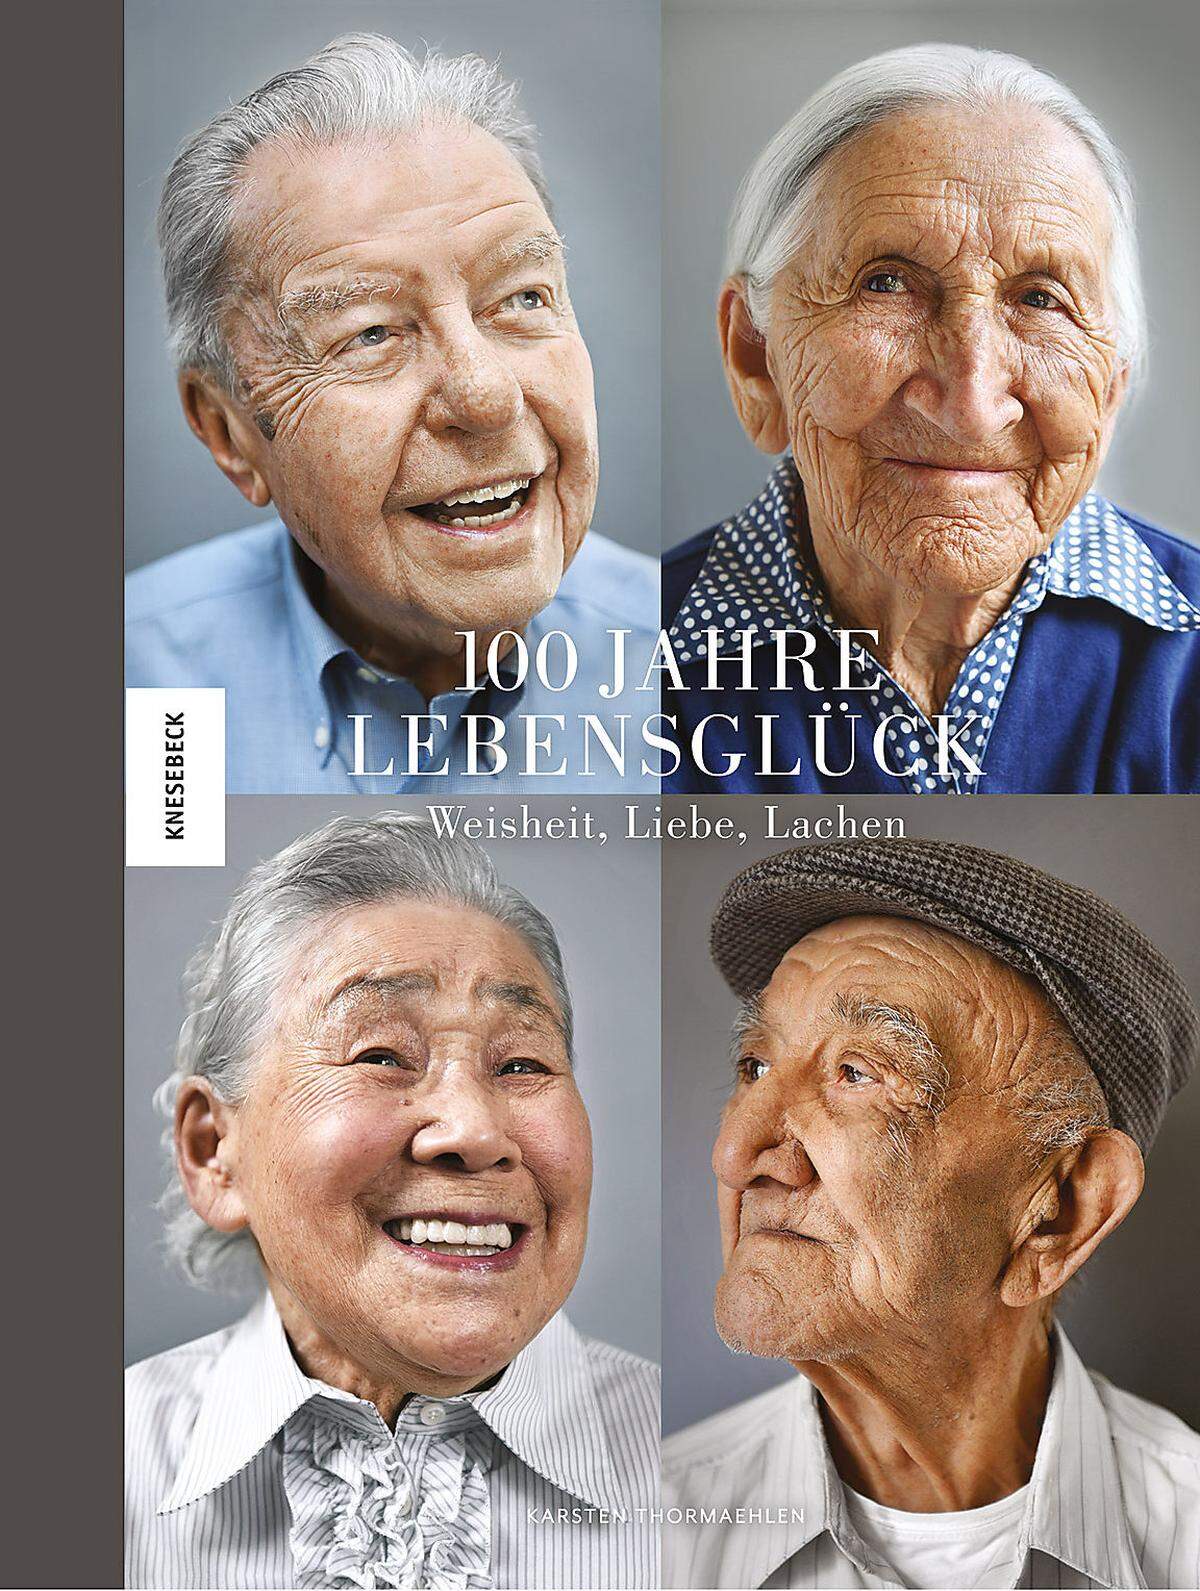 "100 Jahre Lebensglück. Weisheit, Liebe, Lachen", Knesebeck Verlag 2017, 25,70 Euro